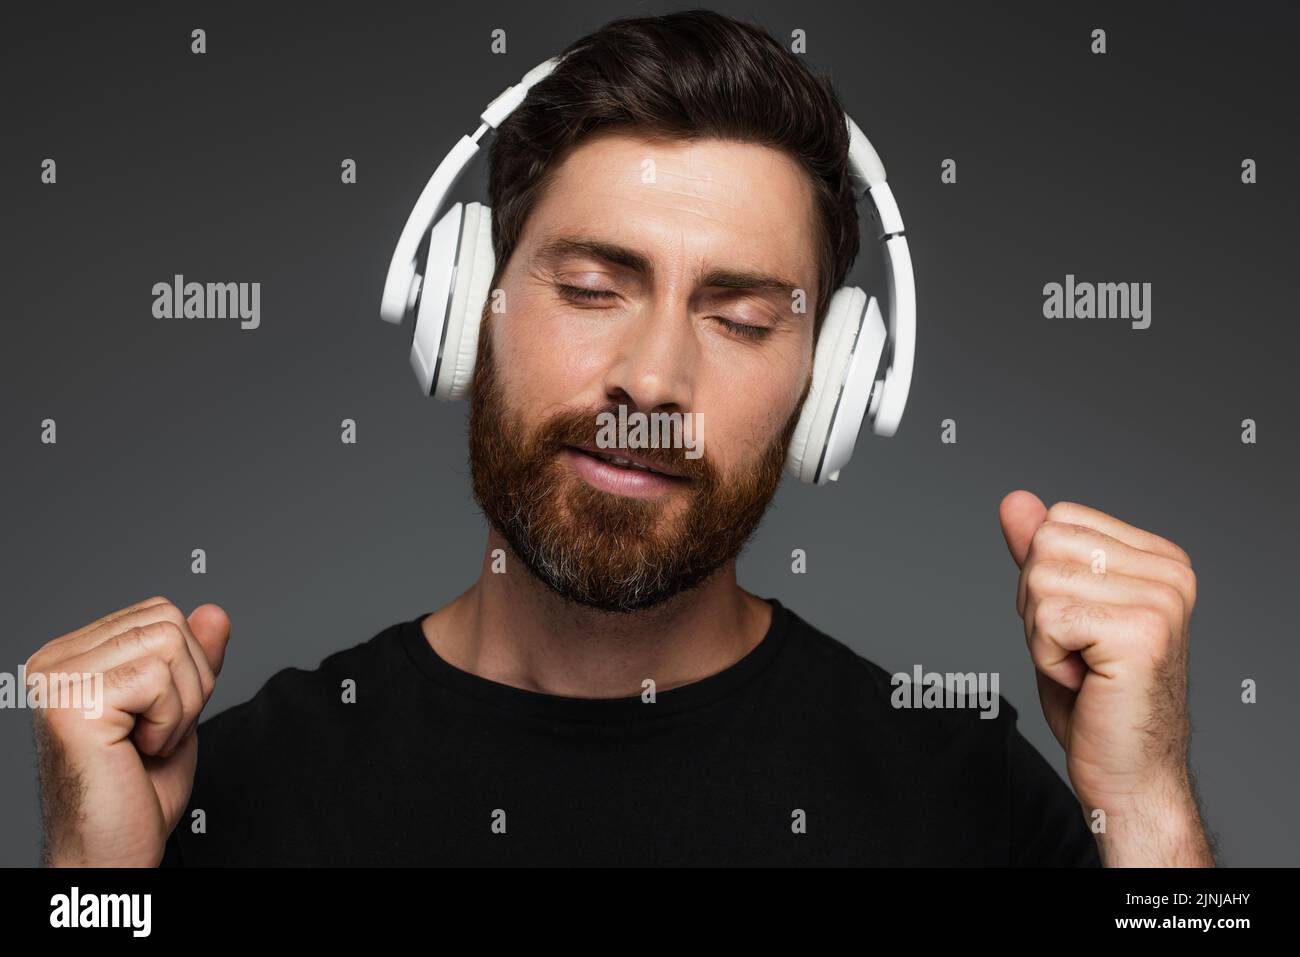 hombre barbudo con los ojos cerrados escuchando música en auriculares inalámbricos aislados en gris, imagen de stock Foto de stock